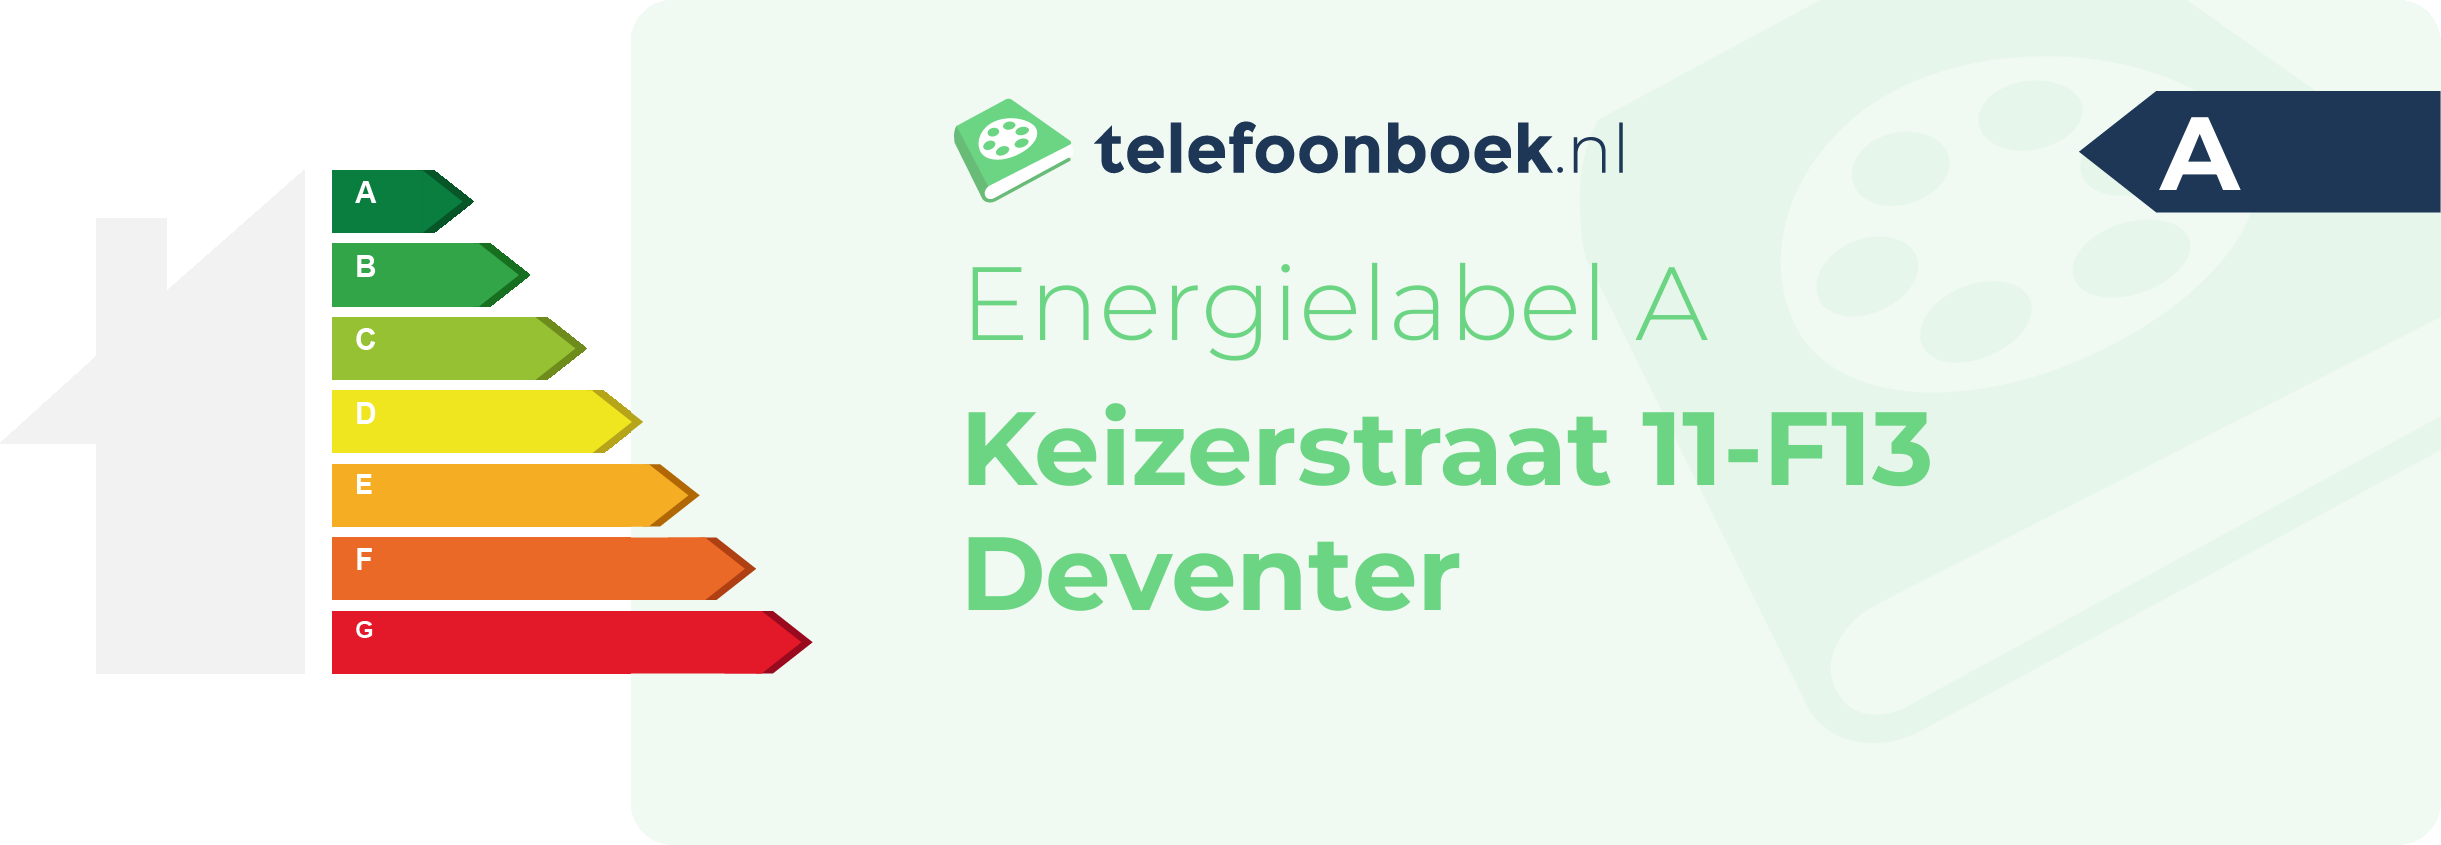 Energielabel Keizerstraat 11-F13 Deventer